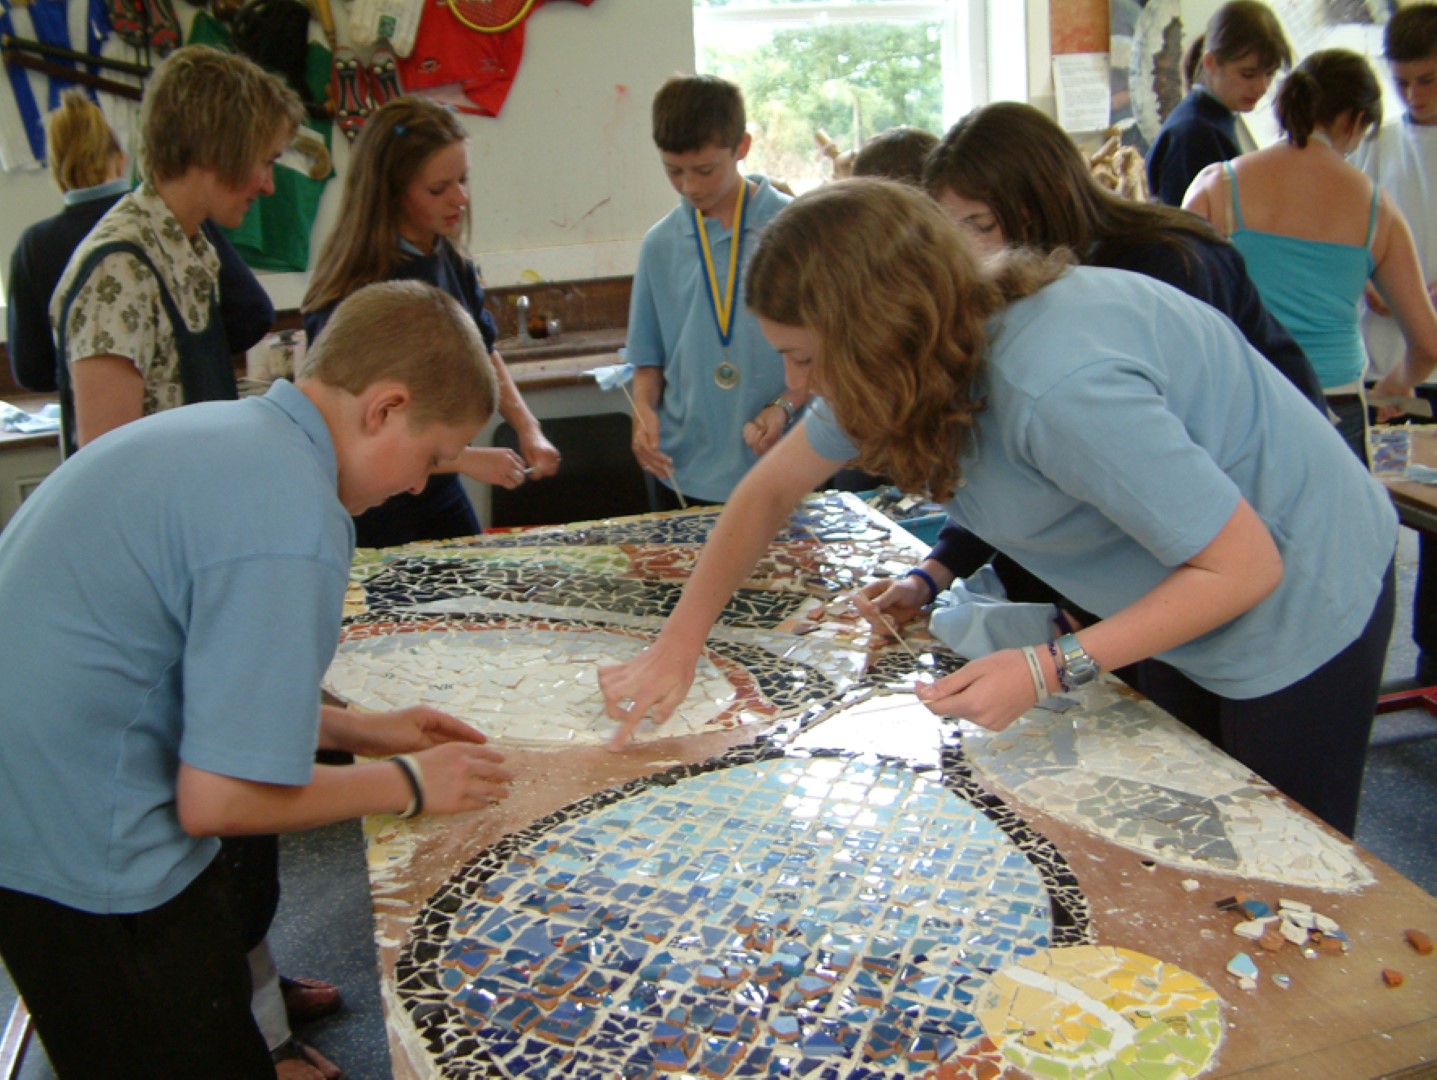 Children working on Mosaic